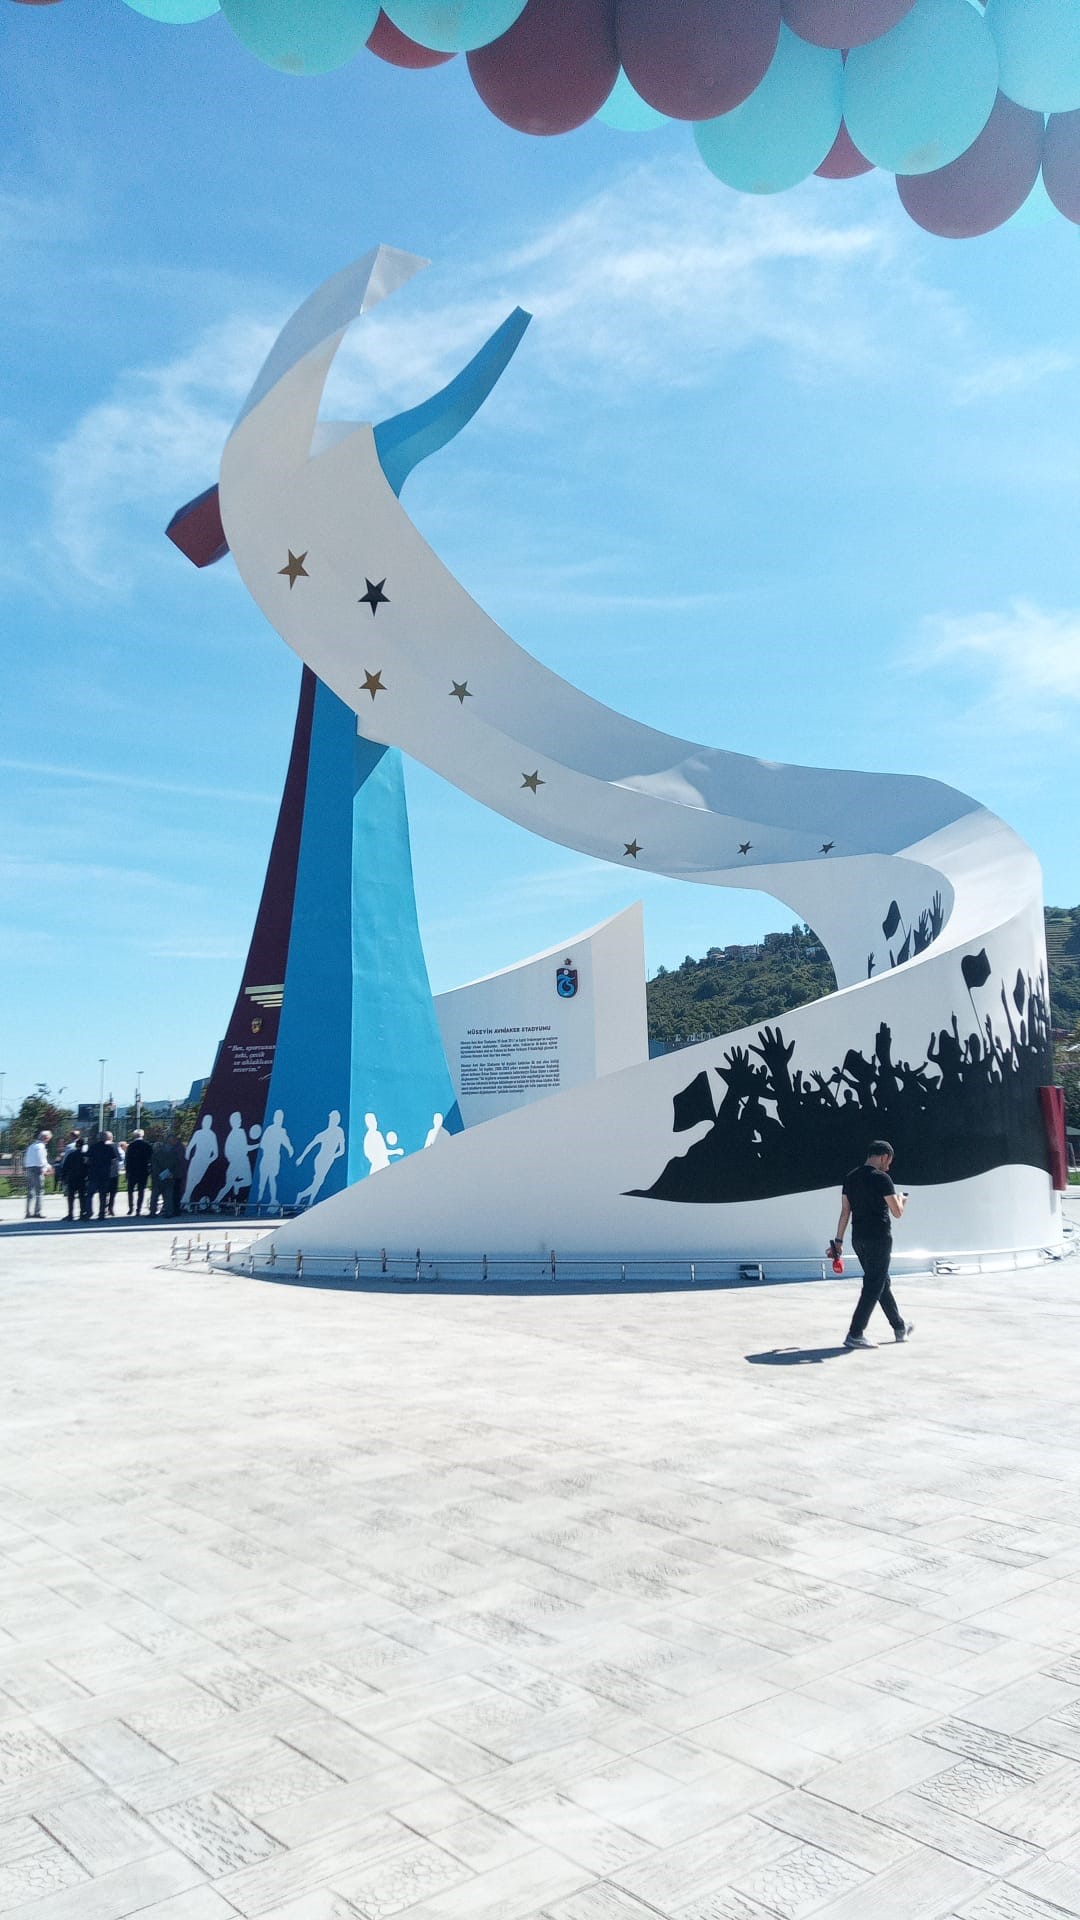 Trabzonspor'un Şampiyonluk Anıtı açıldı! Dikkat çeken yıldız detayı...